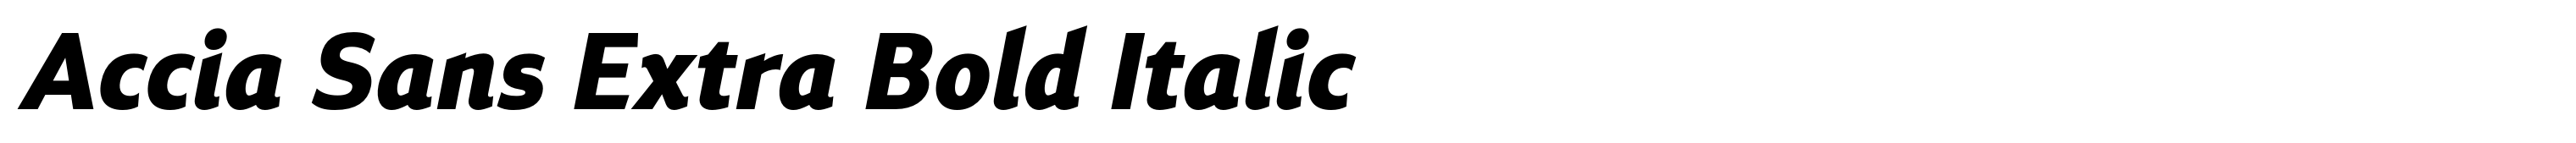 Accia Sans Extra Bold Italic